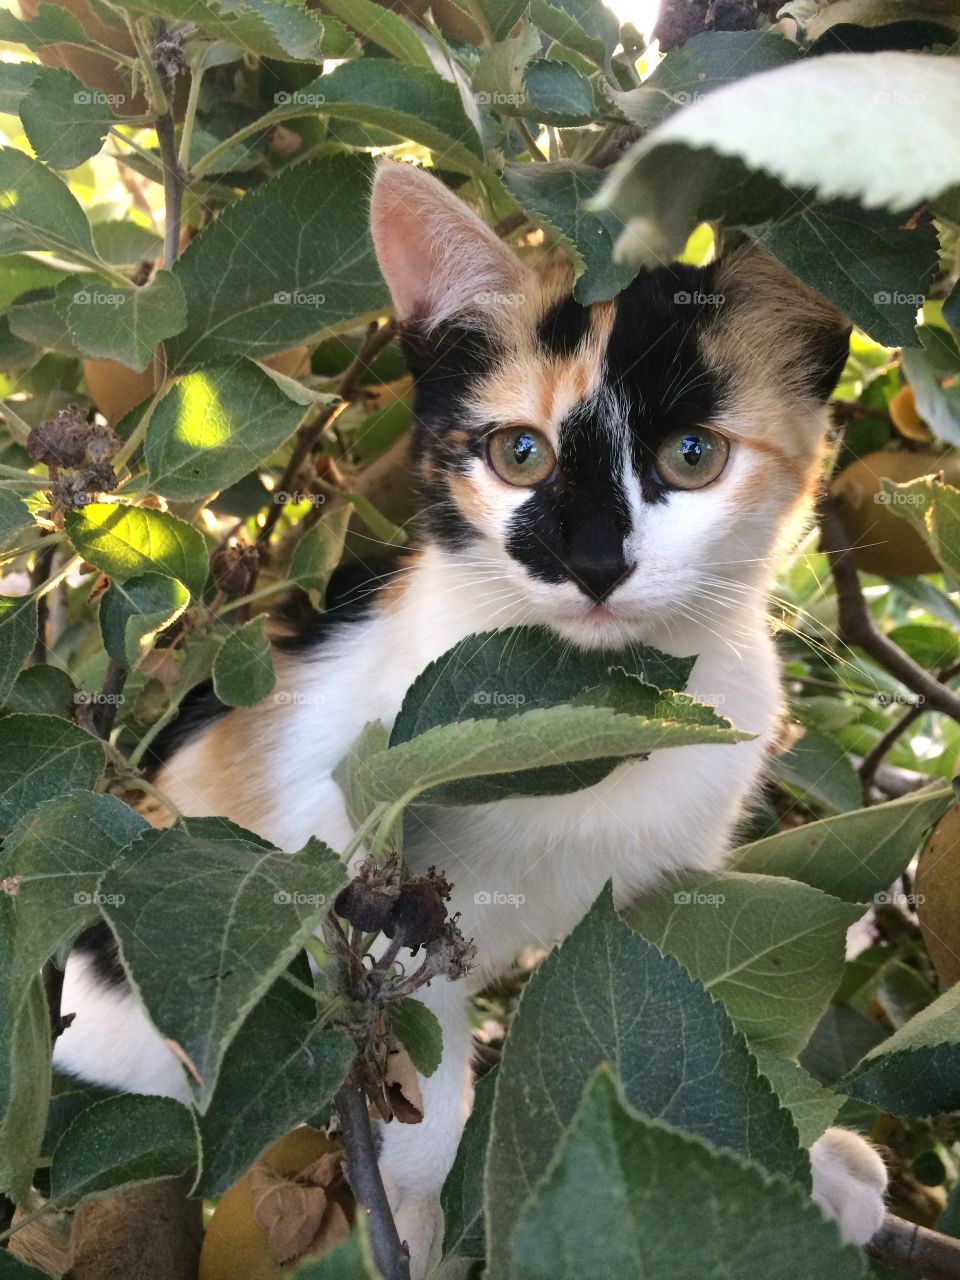 Cat climbing tree.